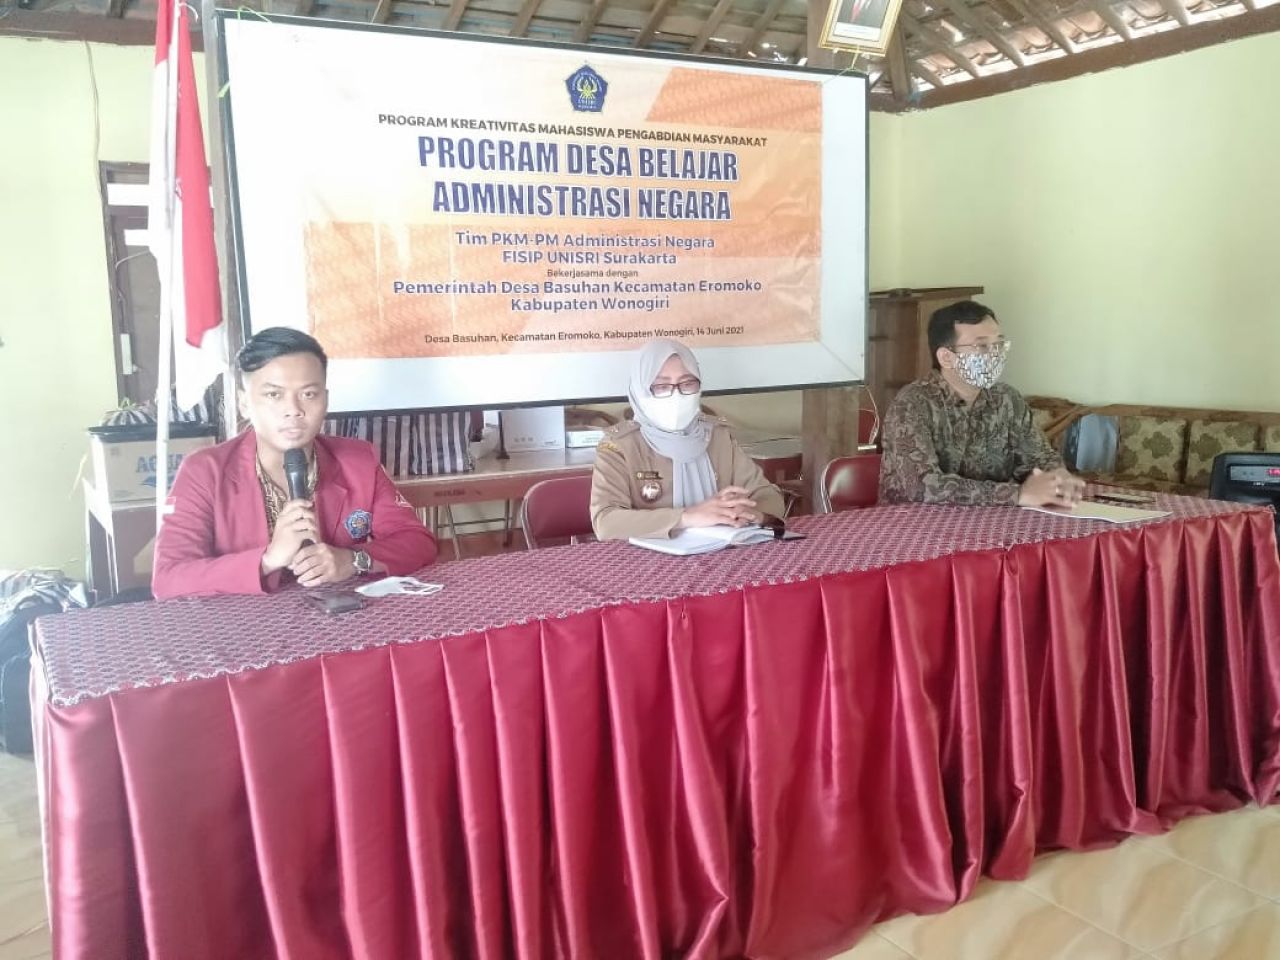 Tim PKM Pengabdian Masyarakat Administrasi Negara Unisri Surakarta melaksanakan Program Desa Belajar